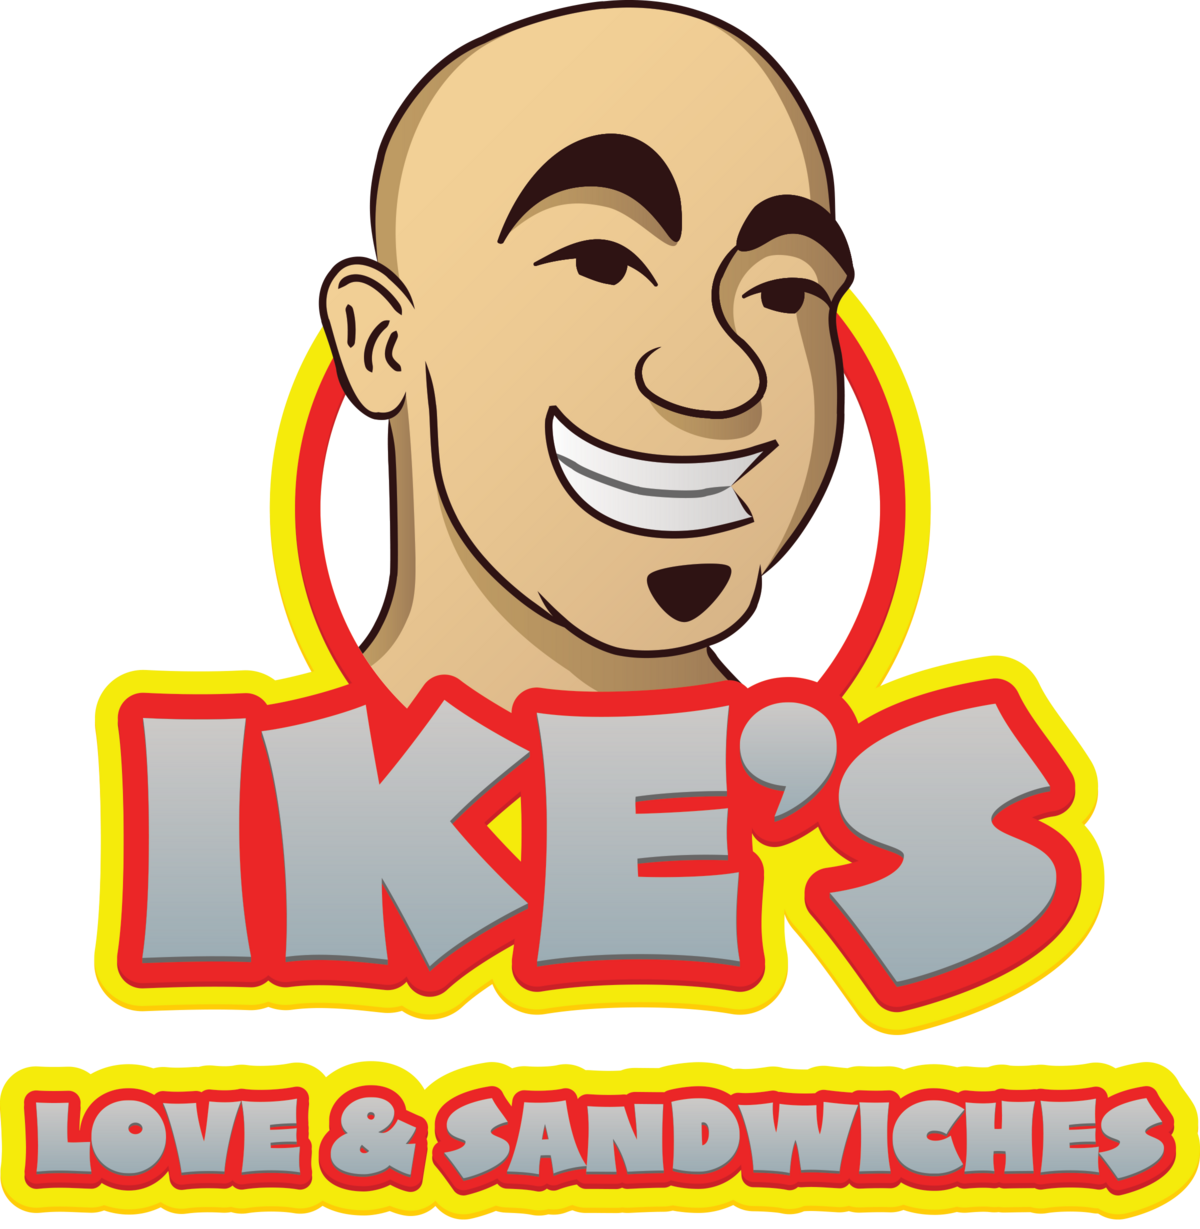 Ikes sandwiches logo